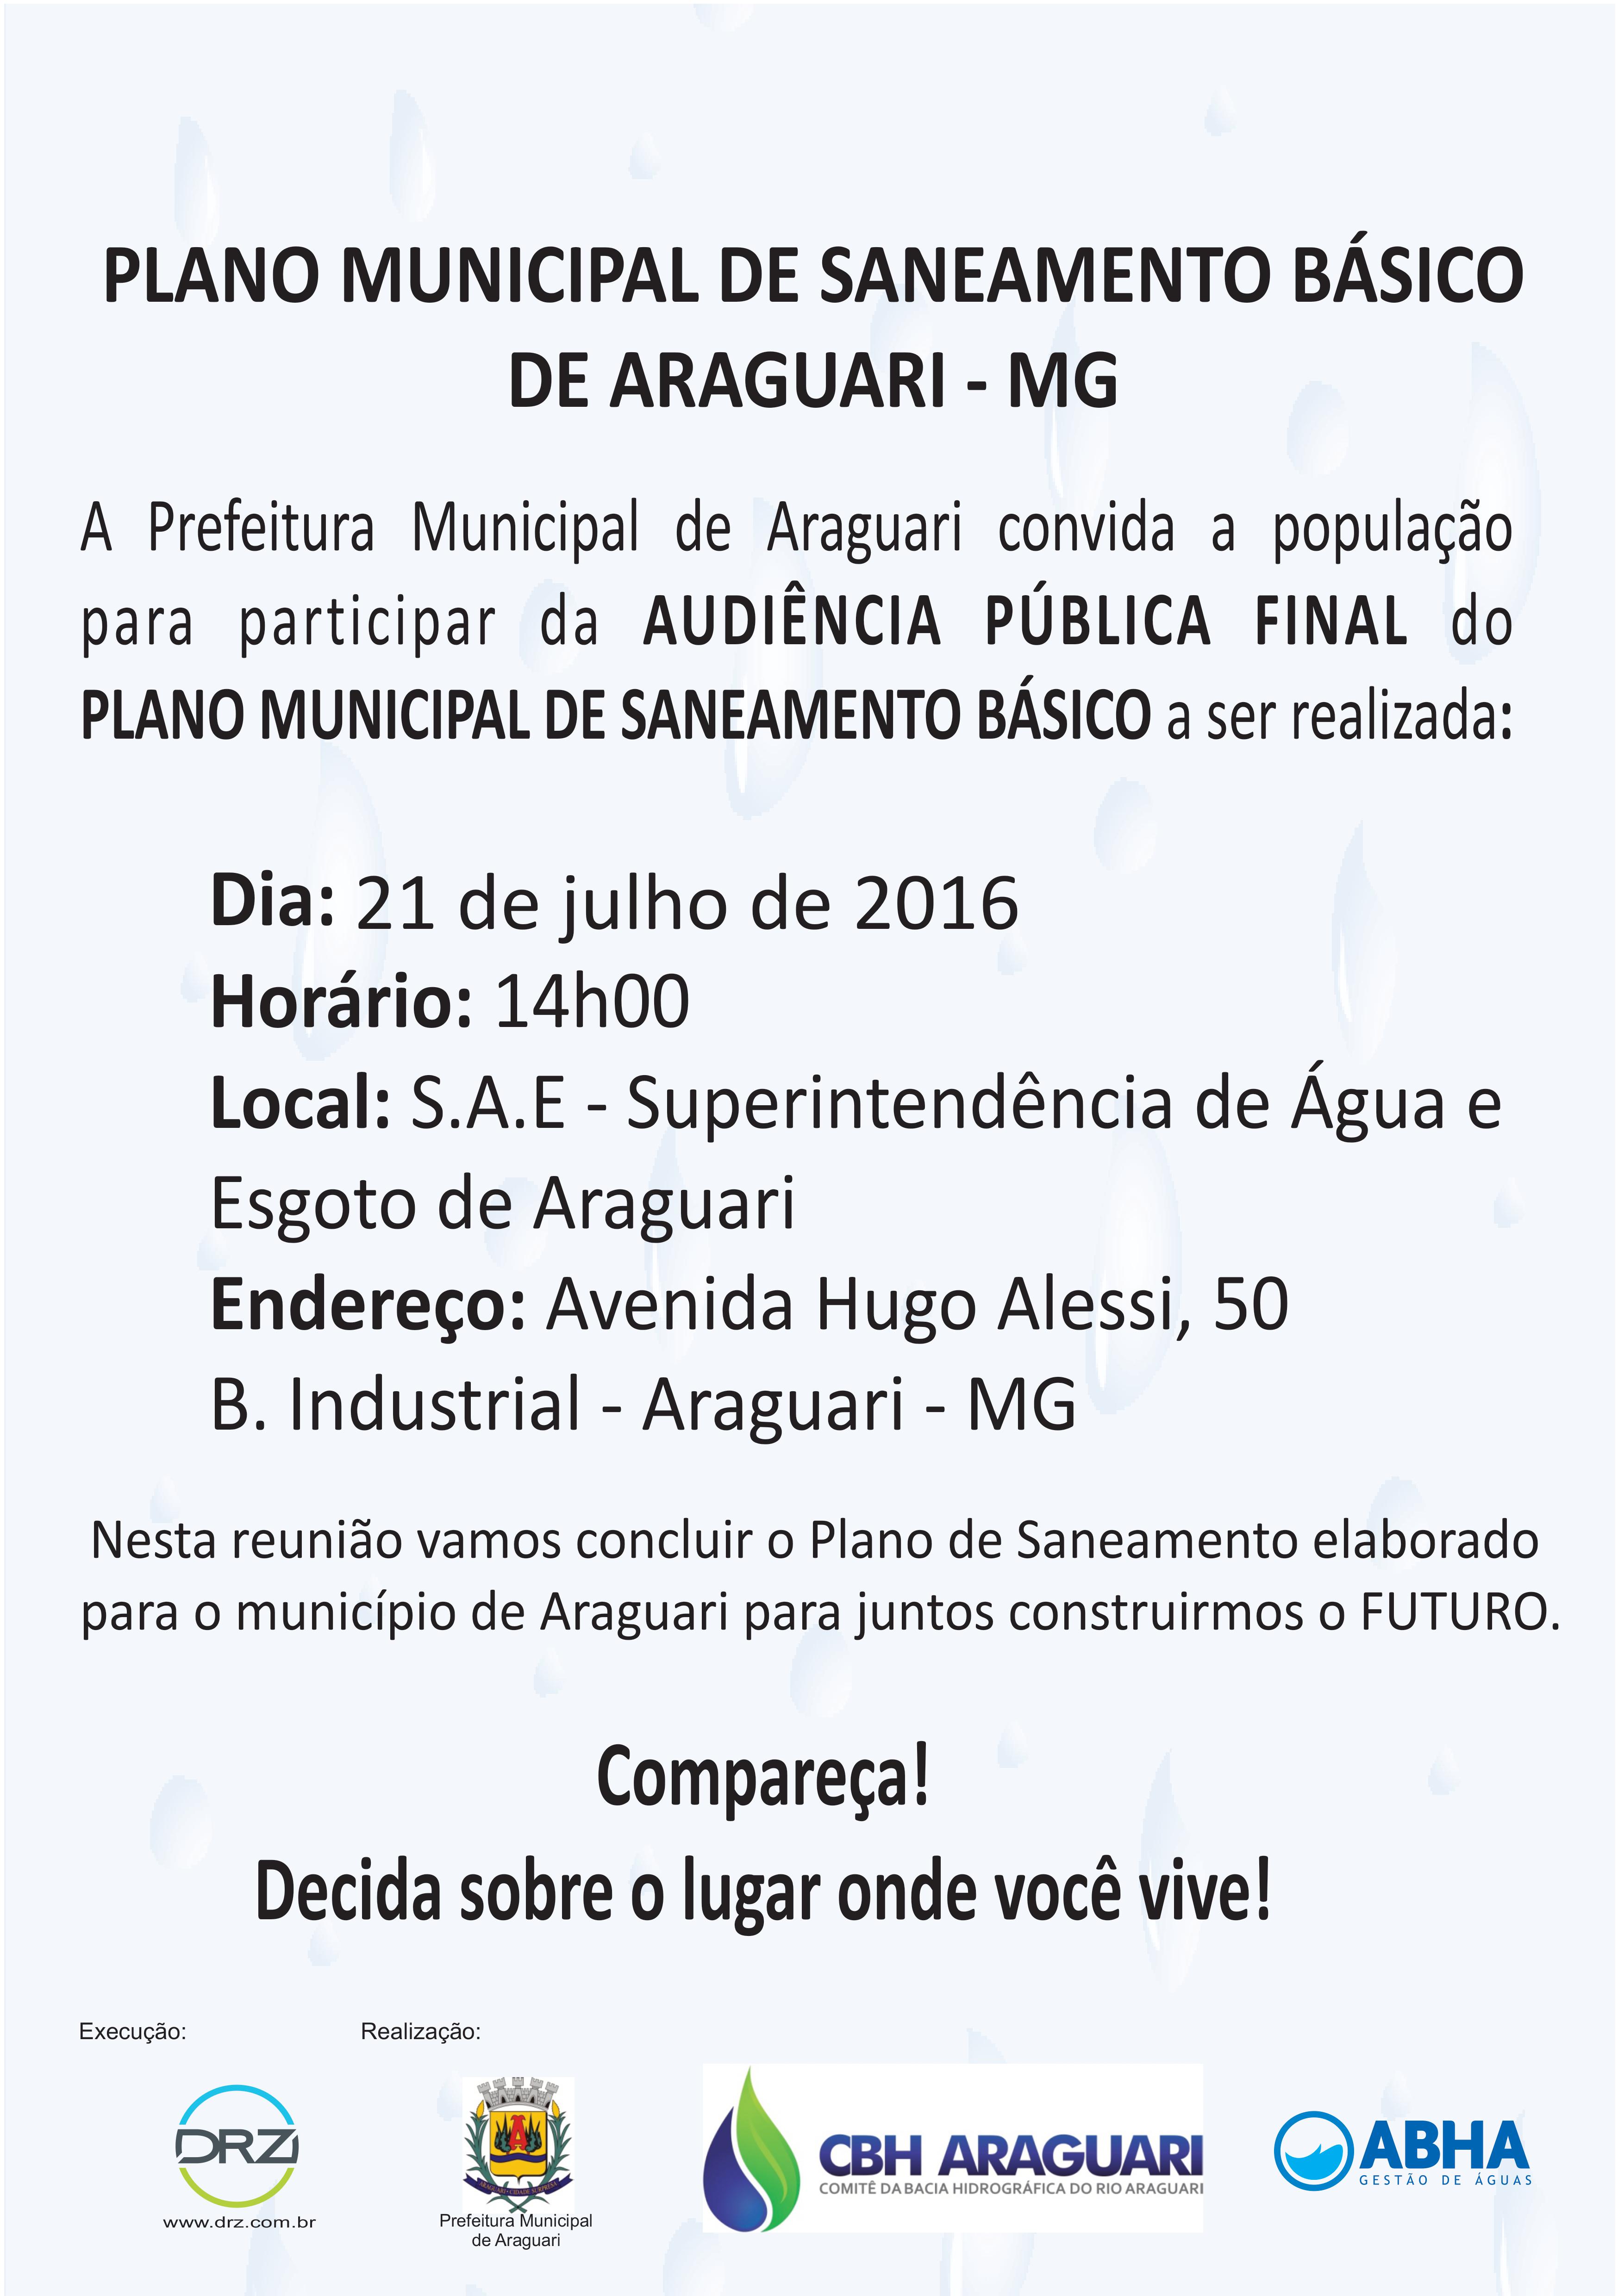 Araguari terá audiência pública para finalizar o PMSB